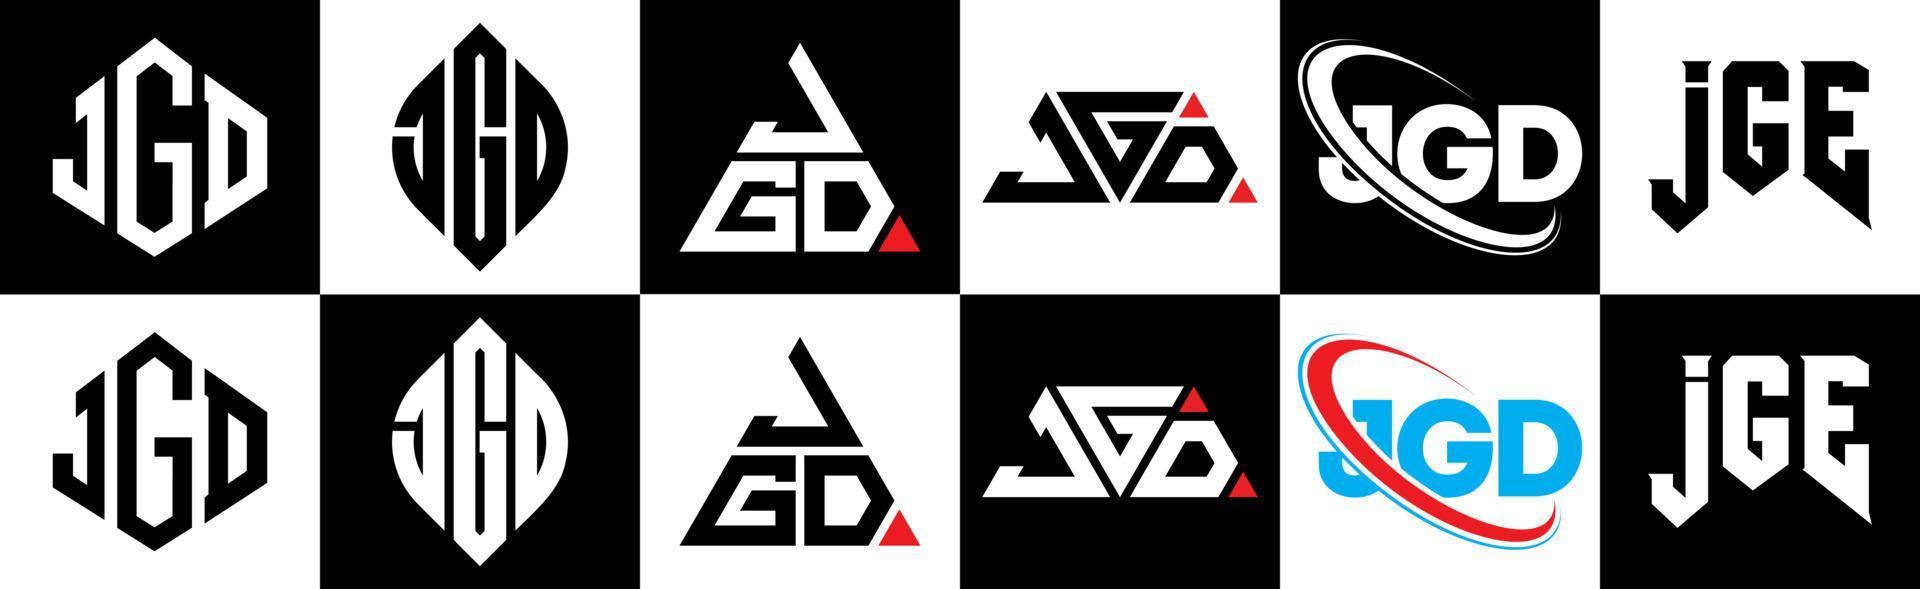 jgd-Buchstaben-Logo-Design in sechs Stilen. jgd Polygon, Kreis, Dreieck, Sechseck, flacher und einfacher Stil mit schwarz-weißem Buchstabenlogo in einer Zeichenfläche. jgd minimalistisches und klassisches logo vektor